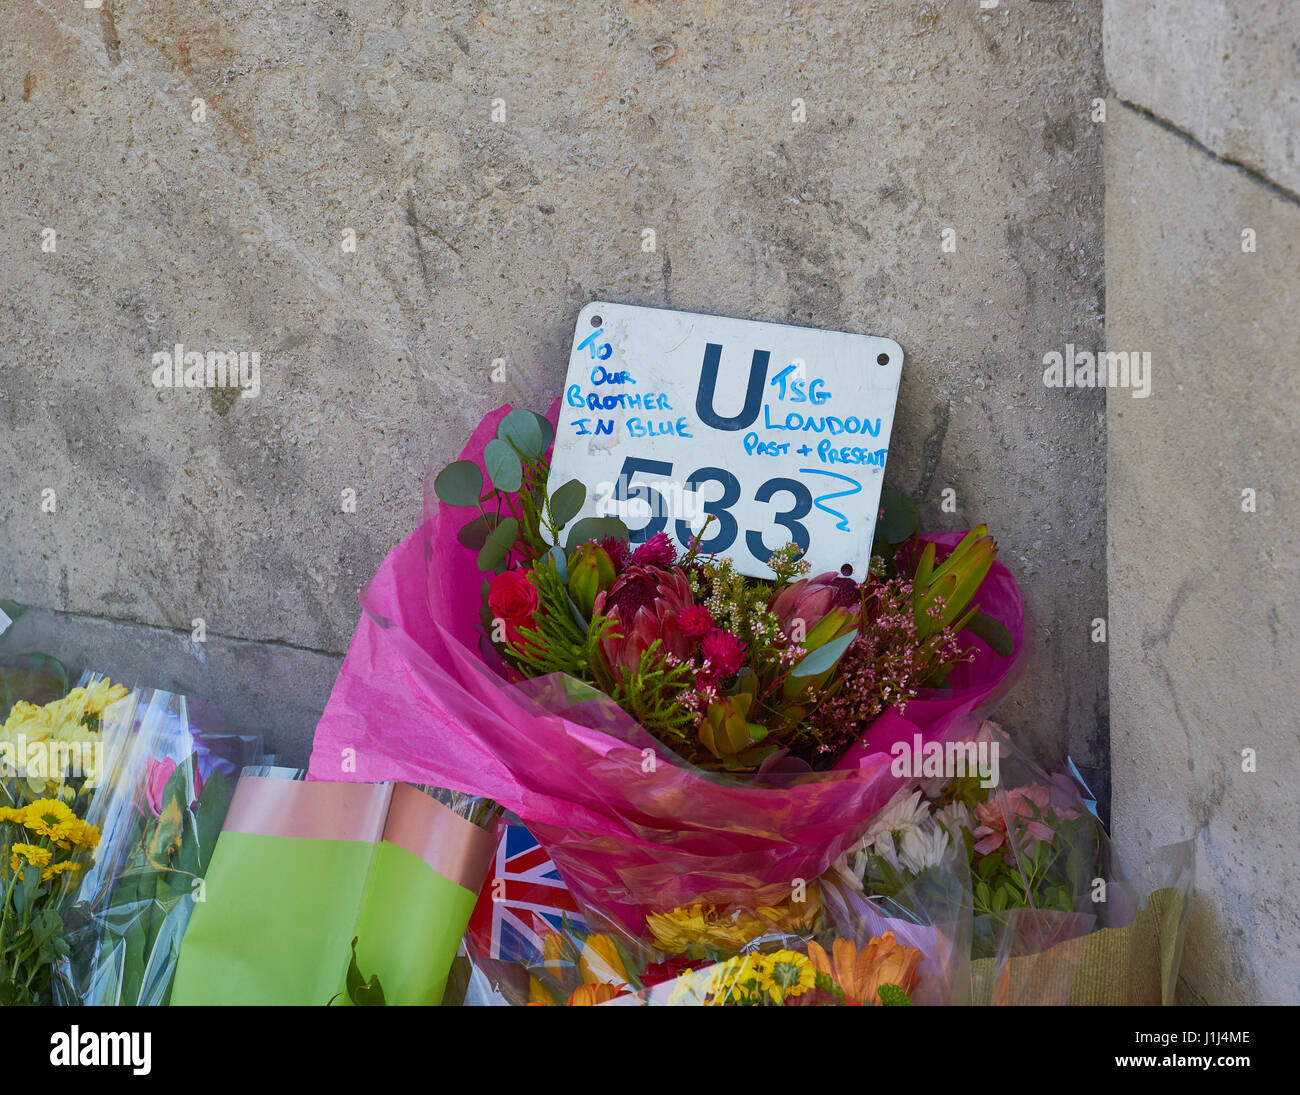 Des fleurs et des hommages à PC Keith Palmer héros et victime dans l'attaque terroriste de Westminster, Londres, Angleterre Banque D'Images